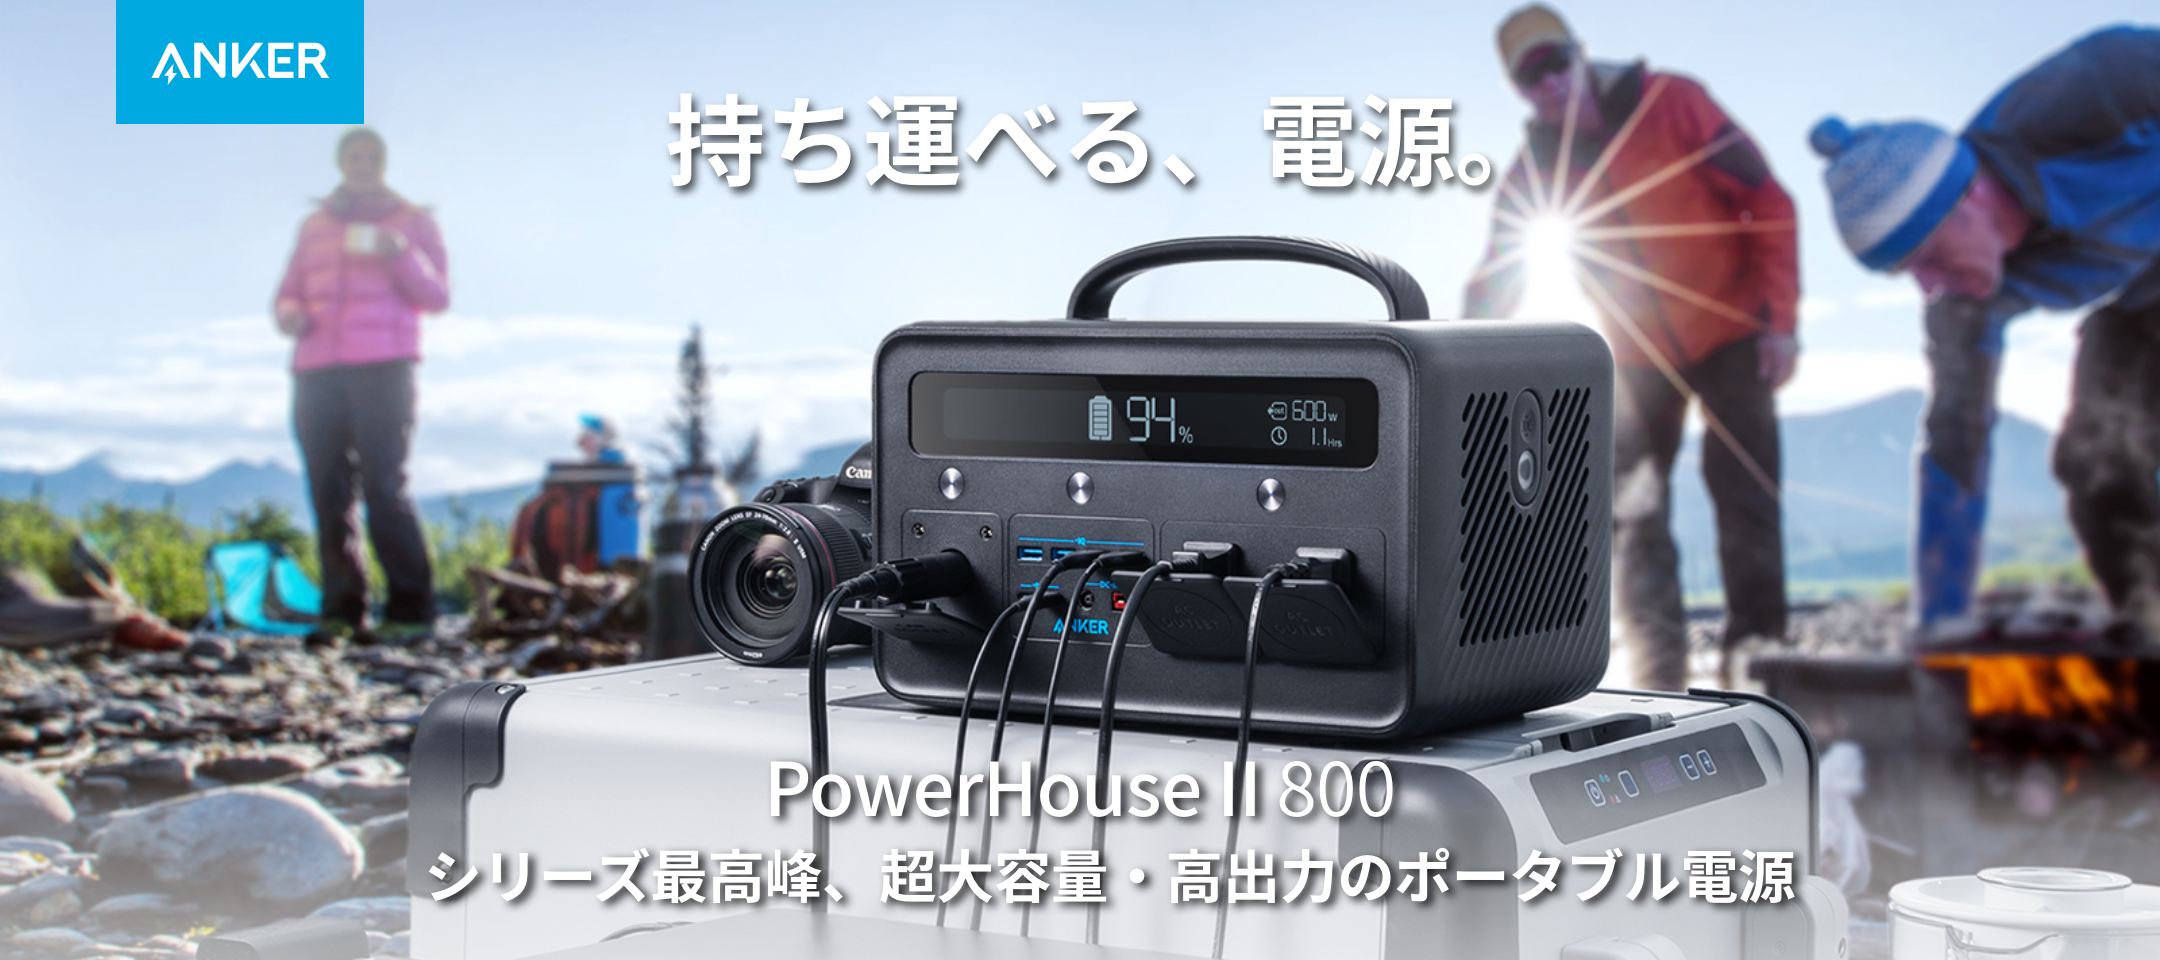 Powerhouse II 800